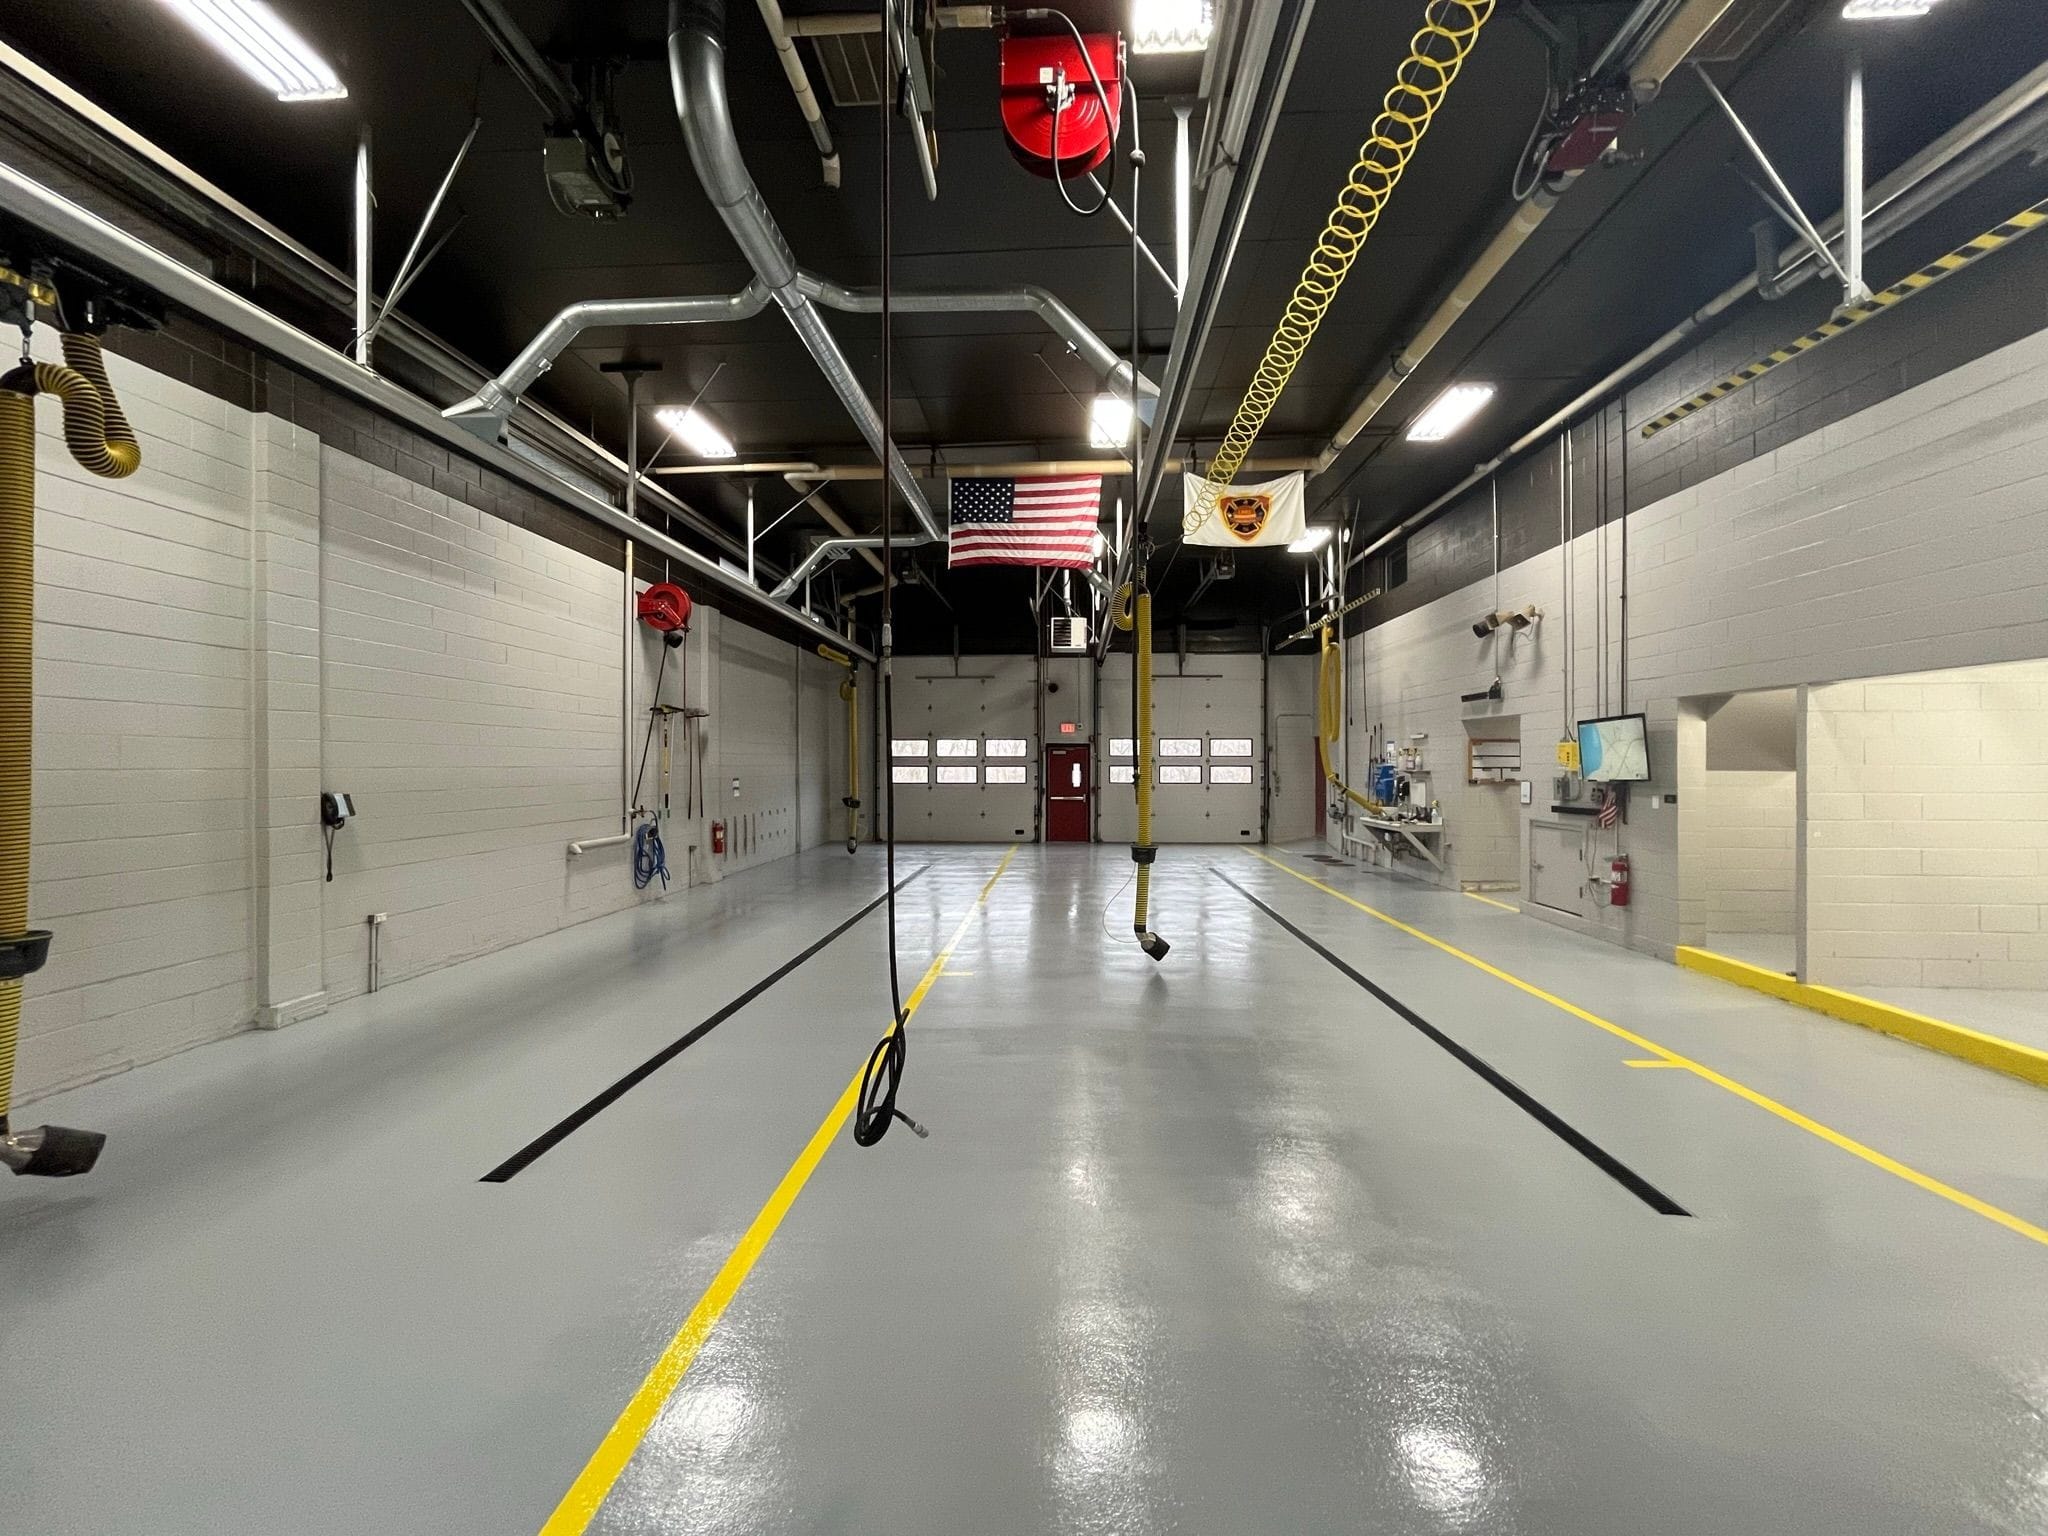 Fire station Garage floor coating